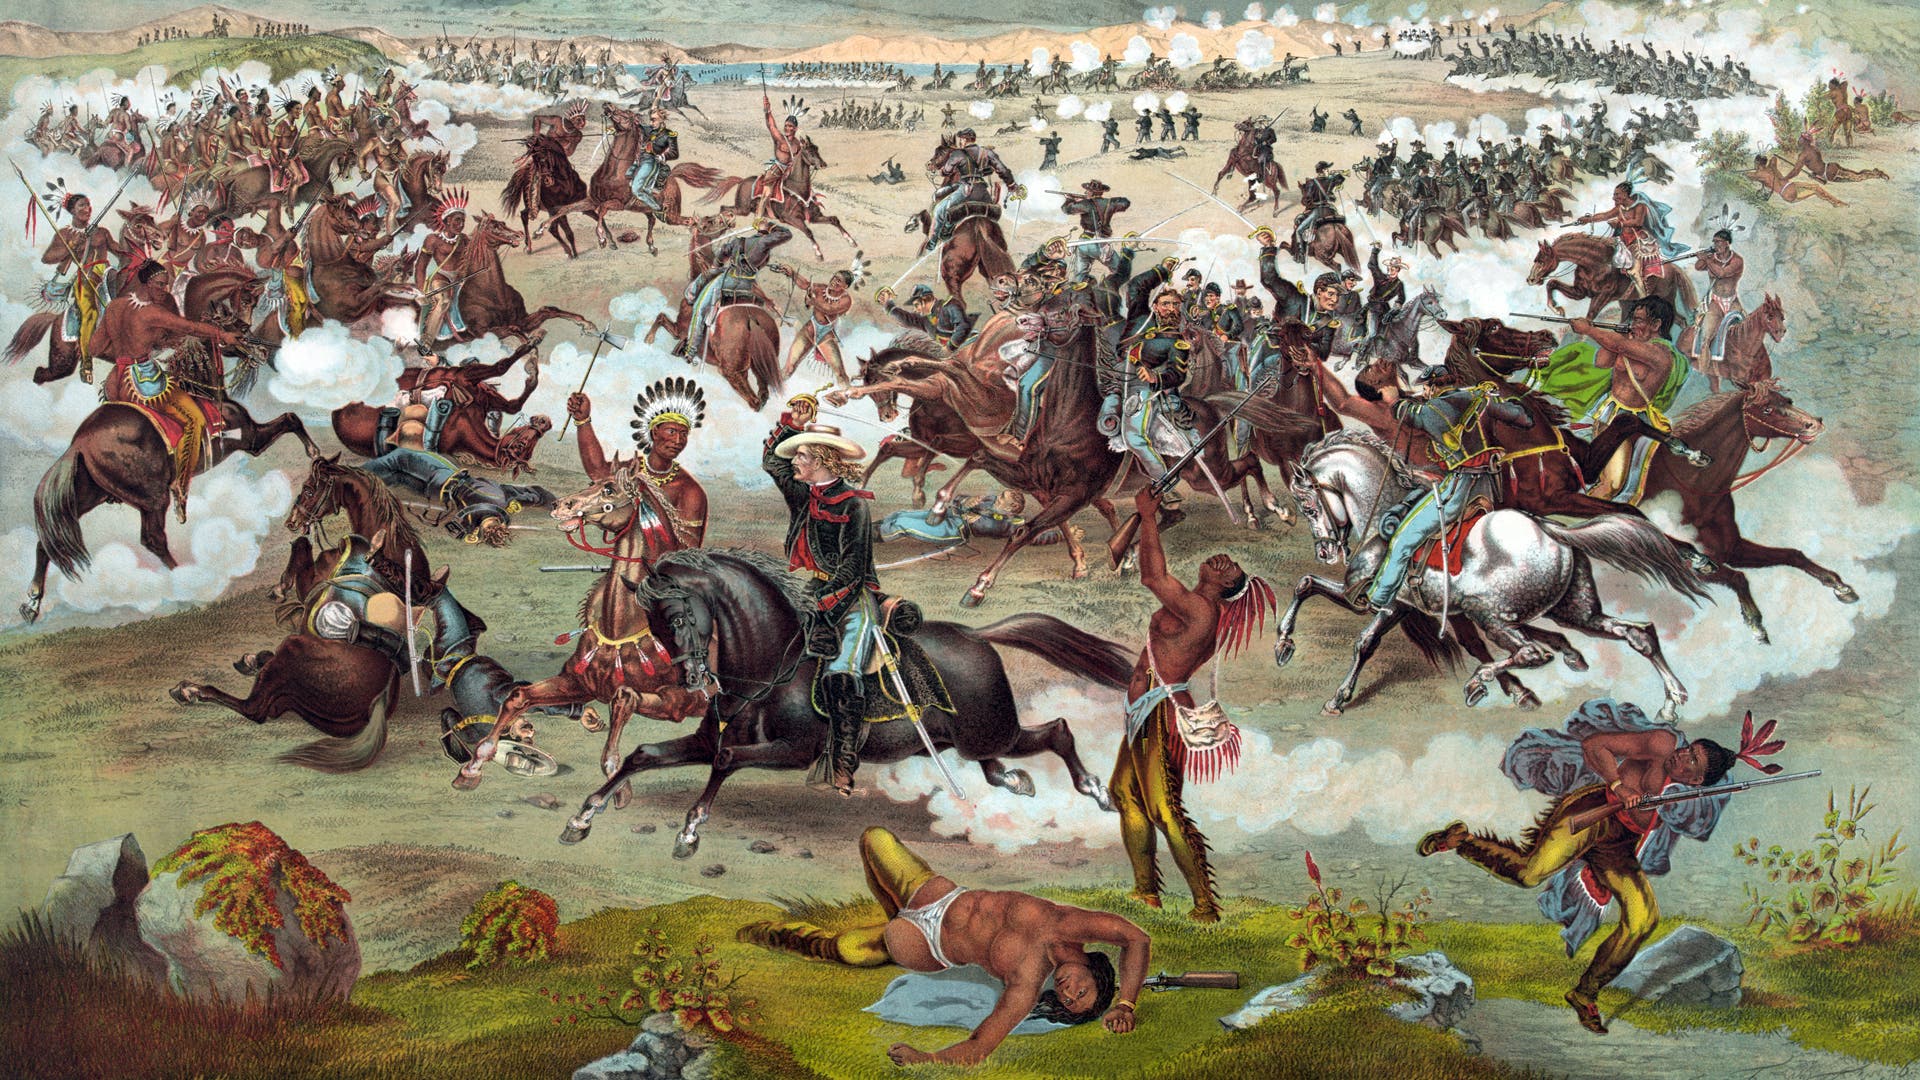 The Battle of Little Bighorn.